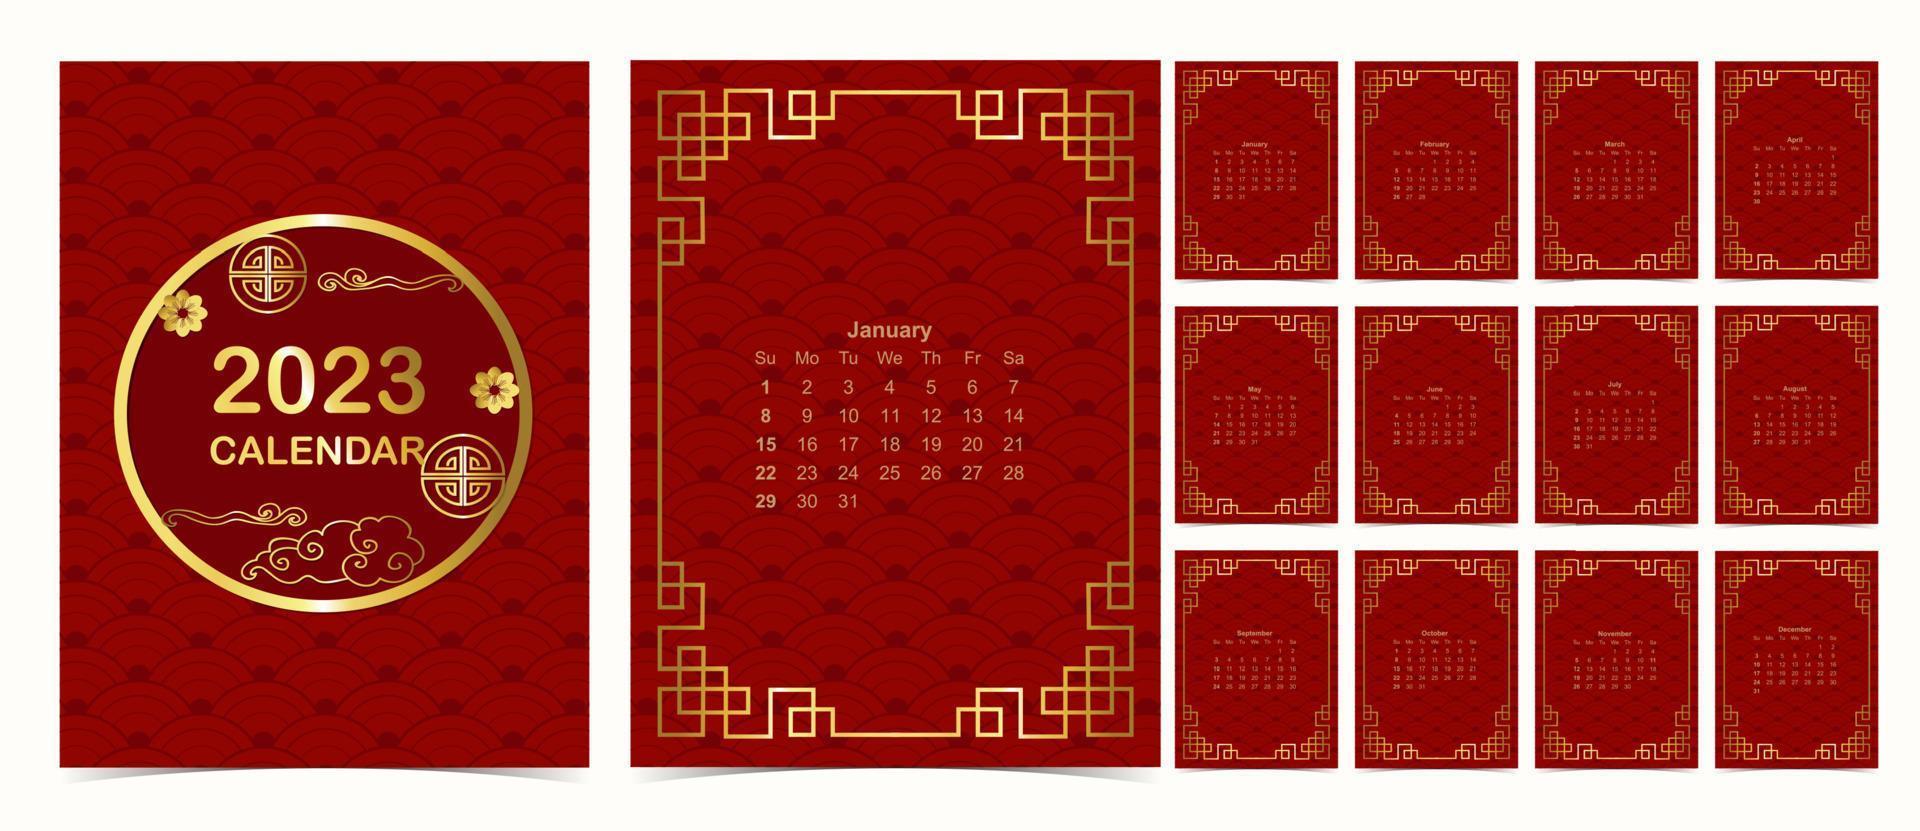 La semaine du calendrier de table rouge 2023 commence le dimanche avec un motif chinois vecteur